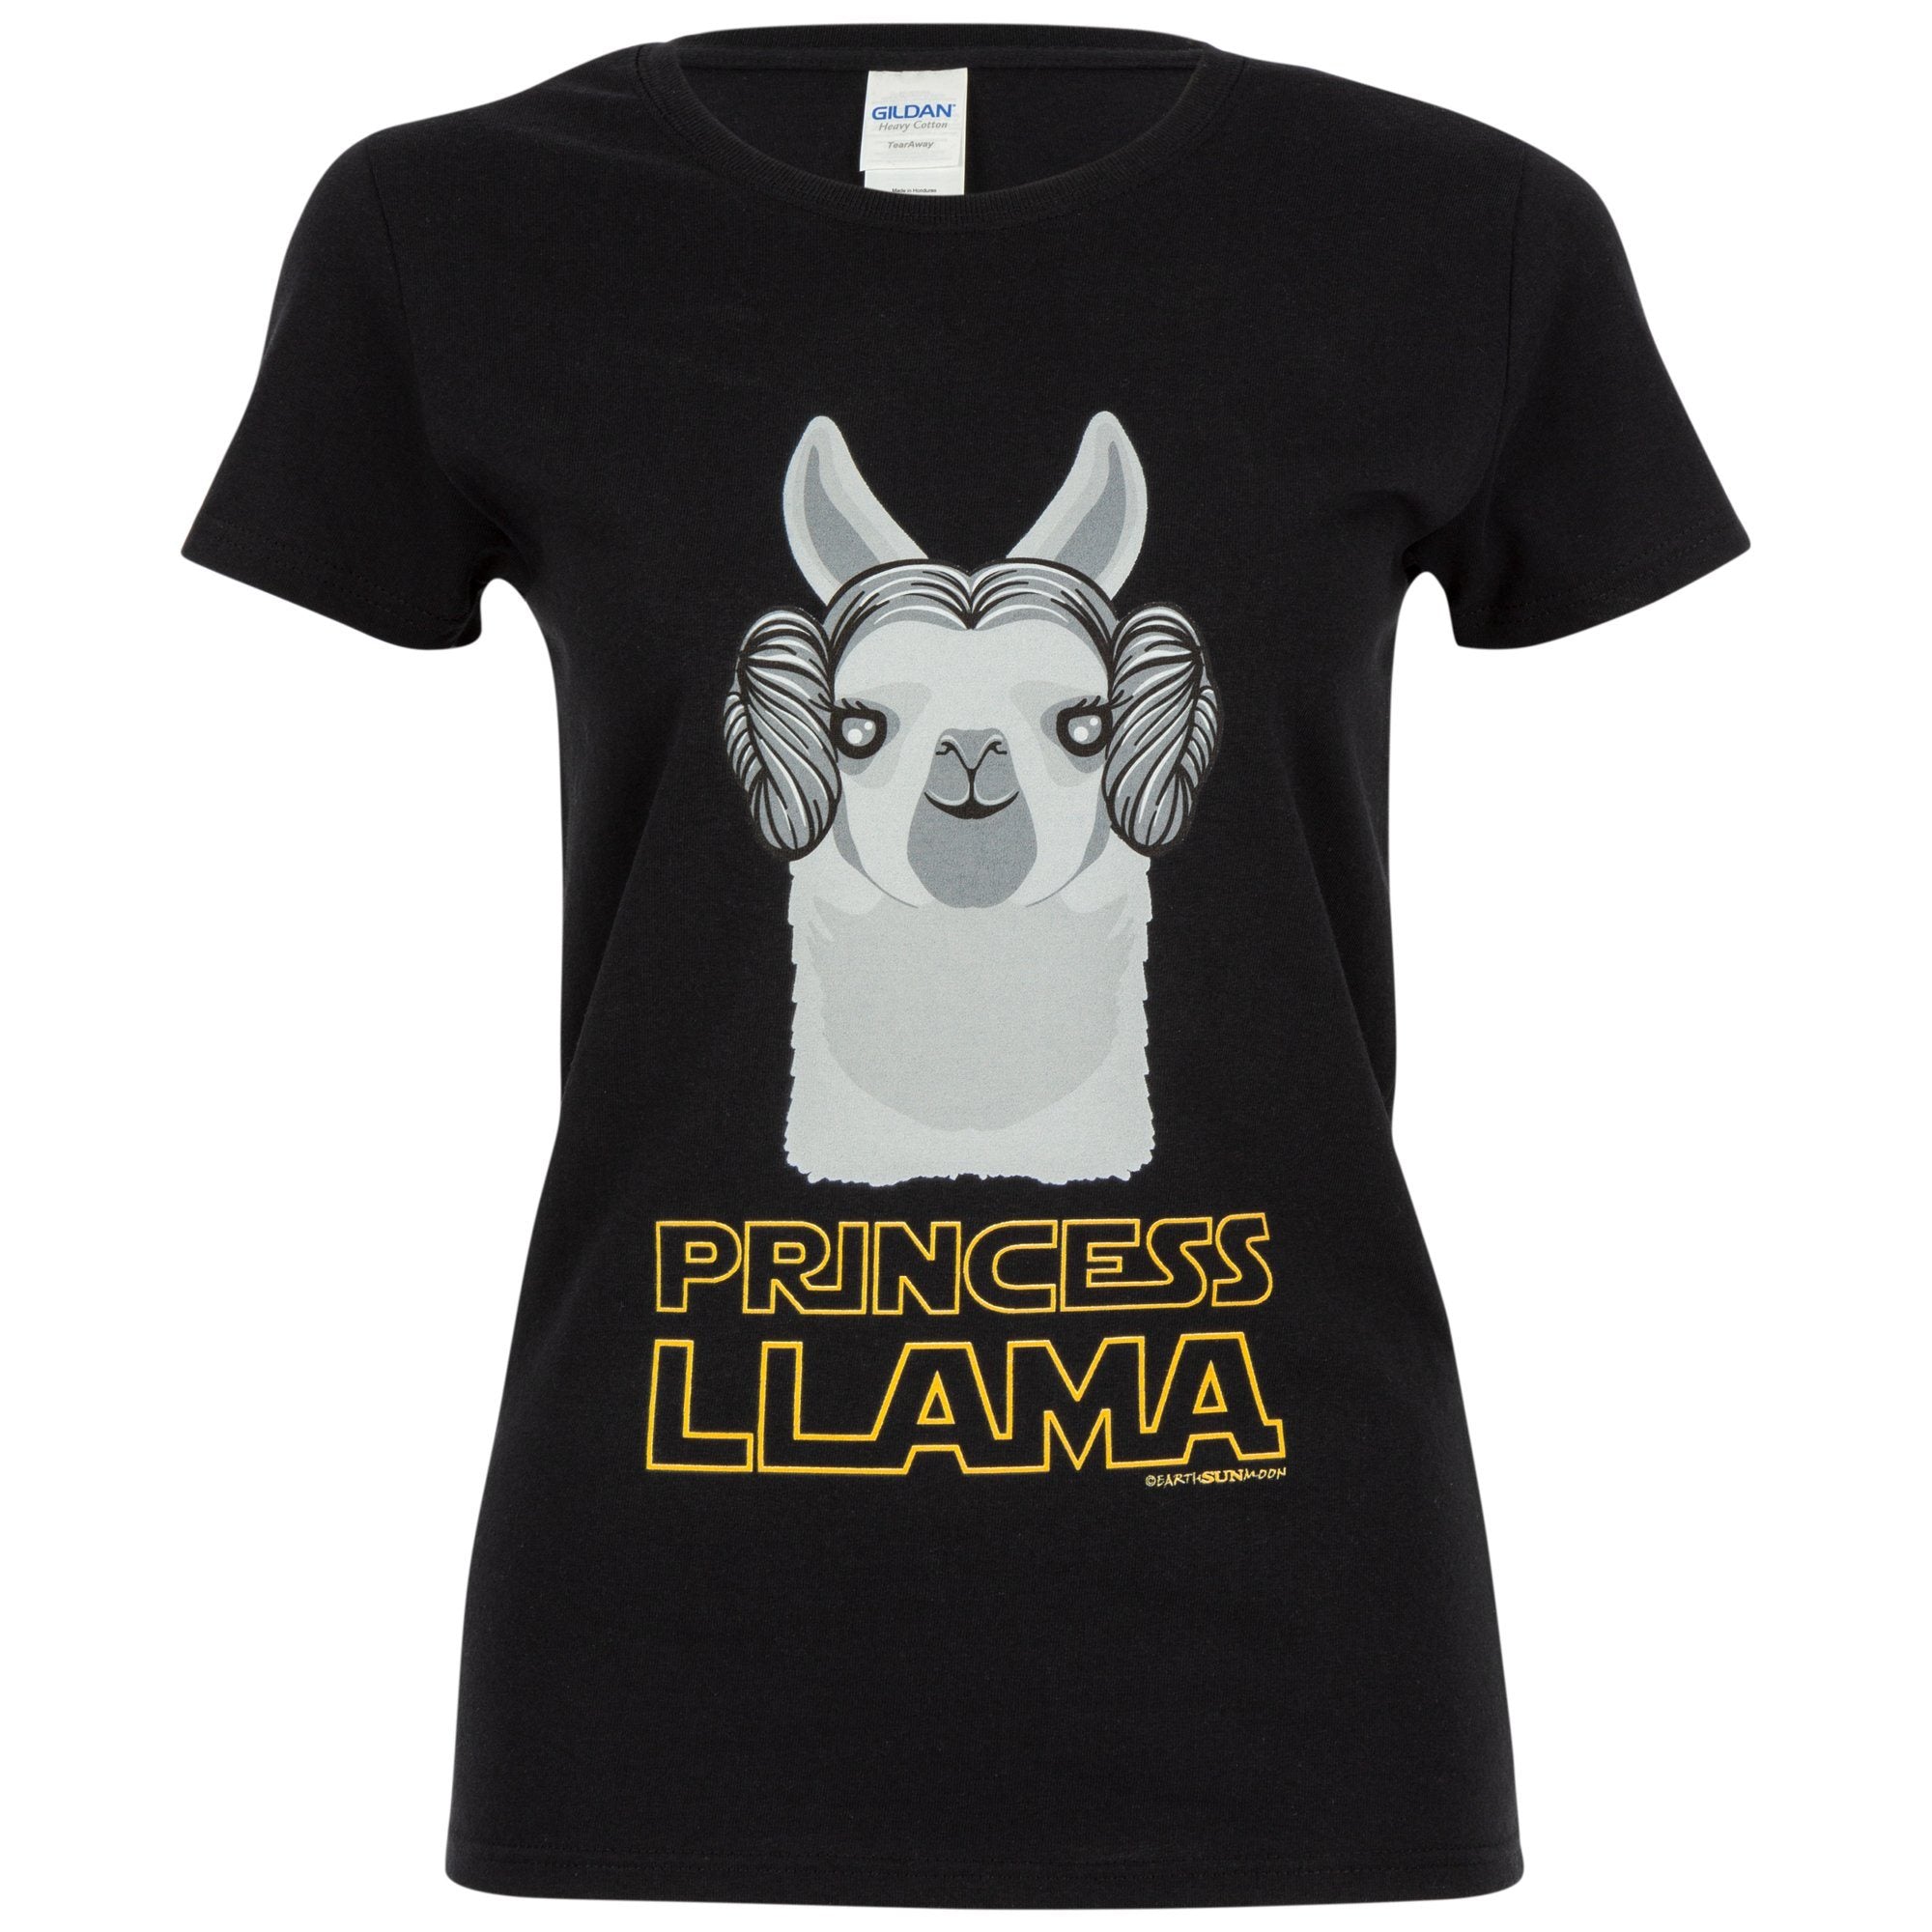 Princess Llama Tee - M